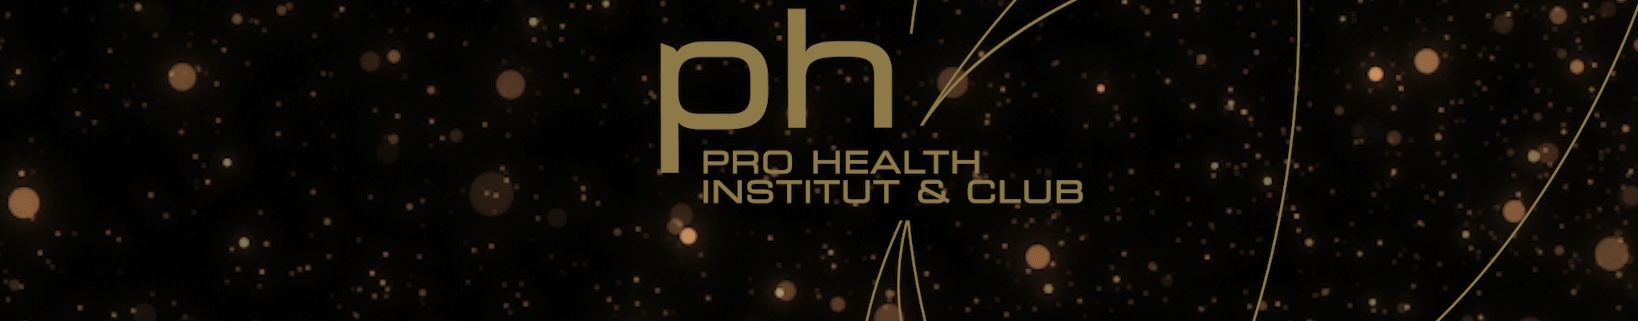 Ph logo 2